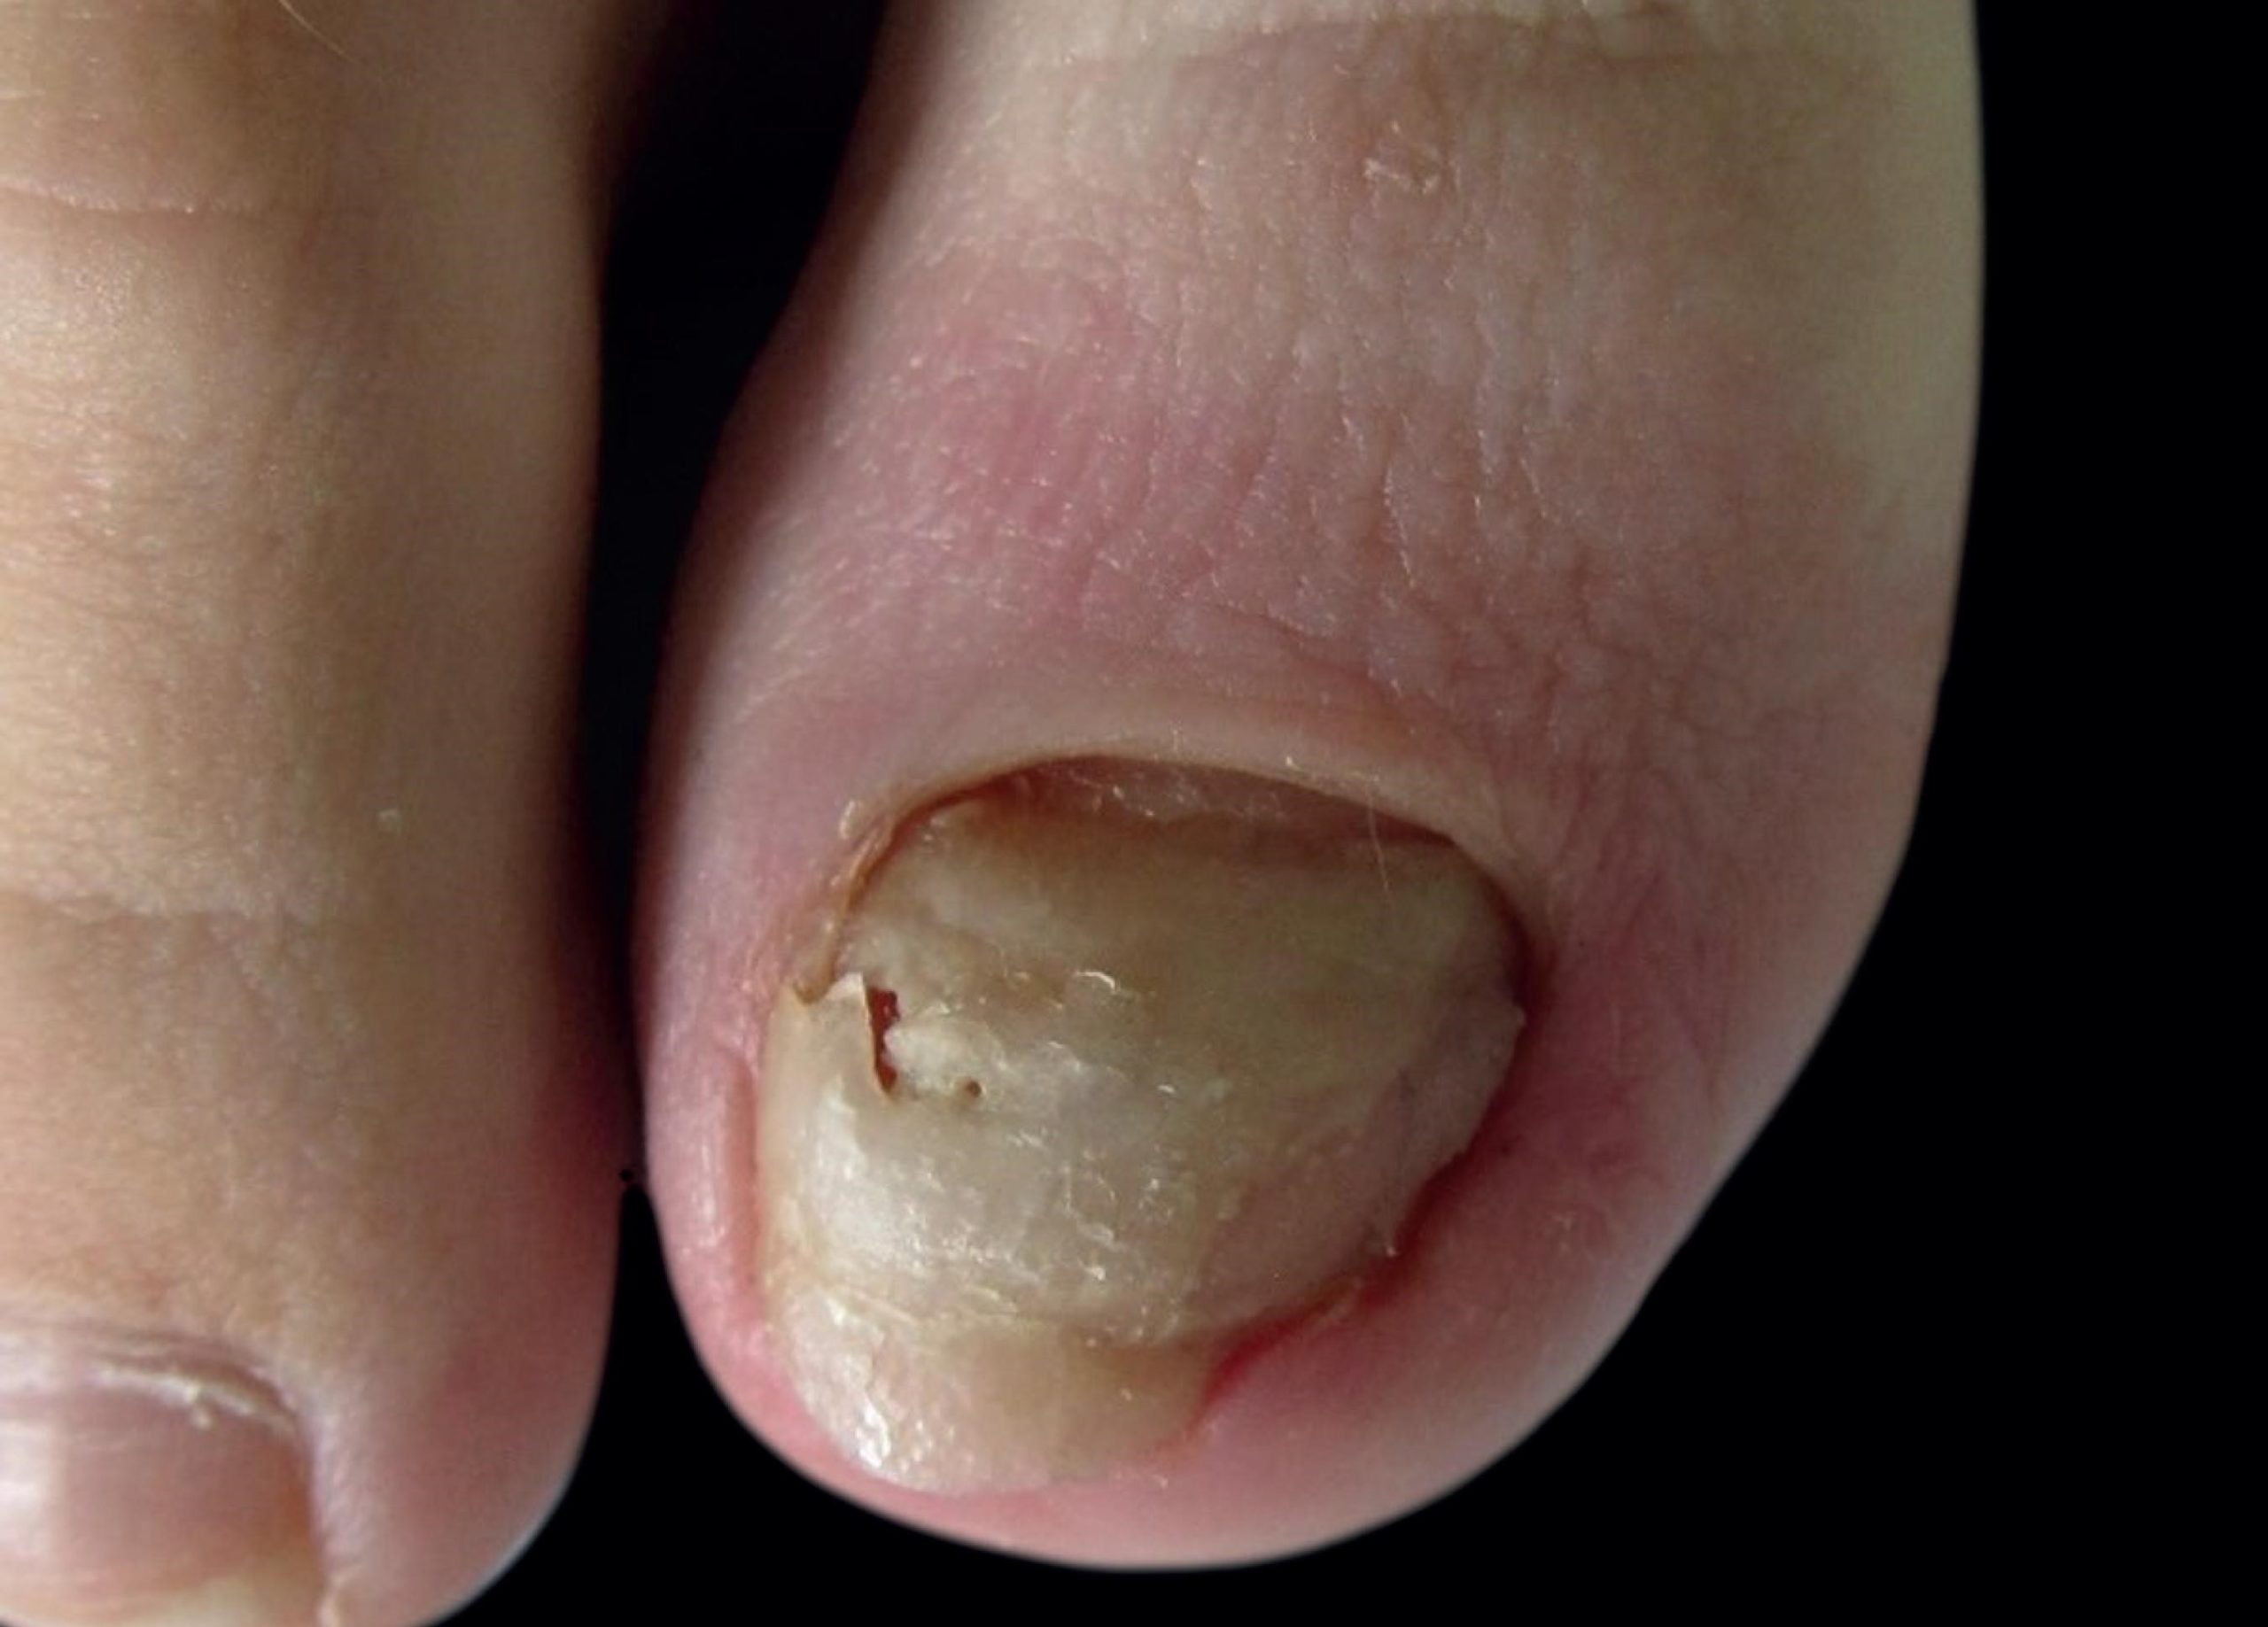  Cómo curar los hongos en las uñas de los pies  GRUPO PACC